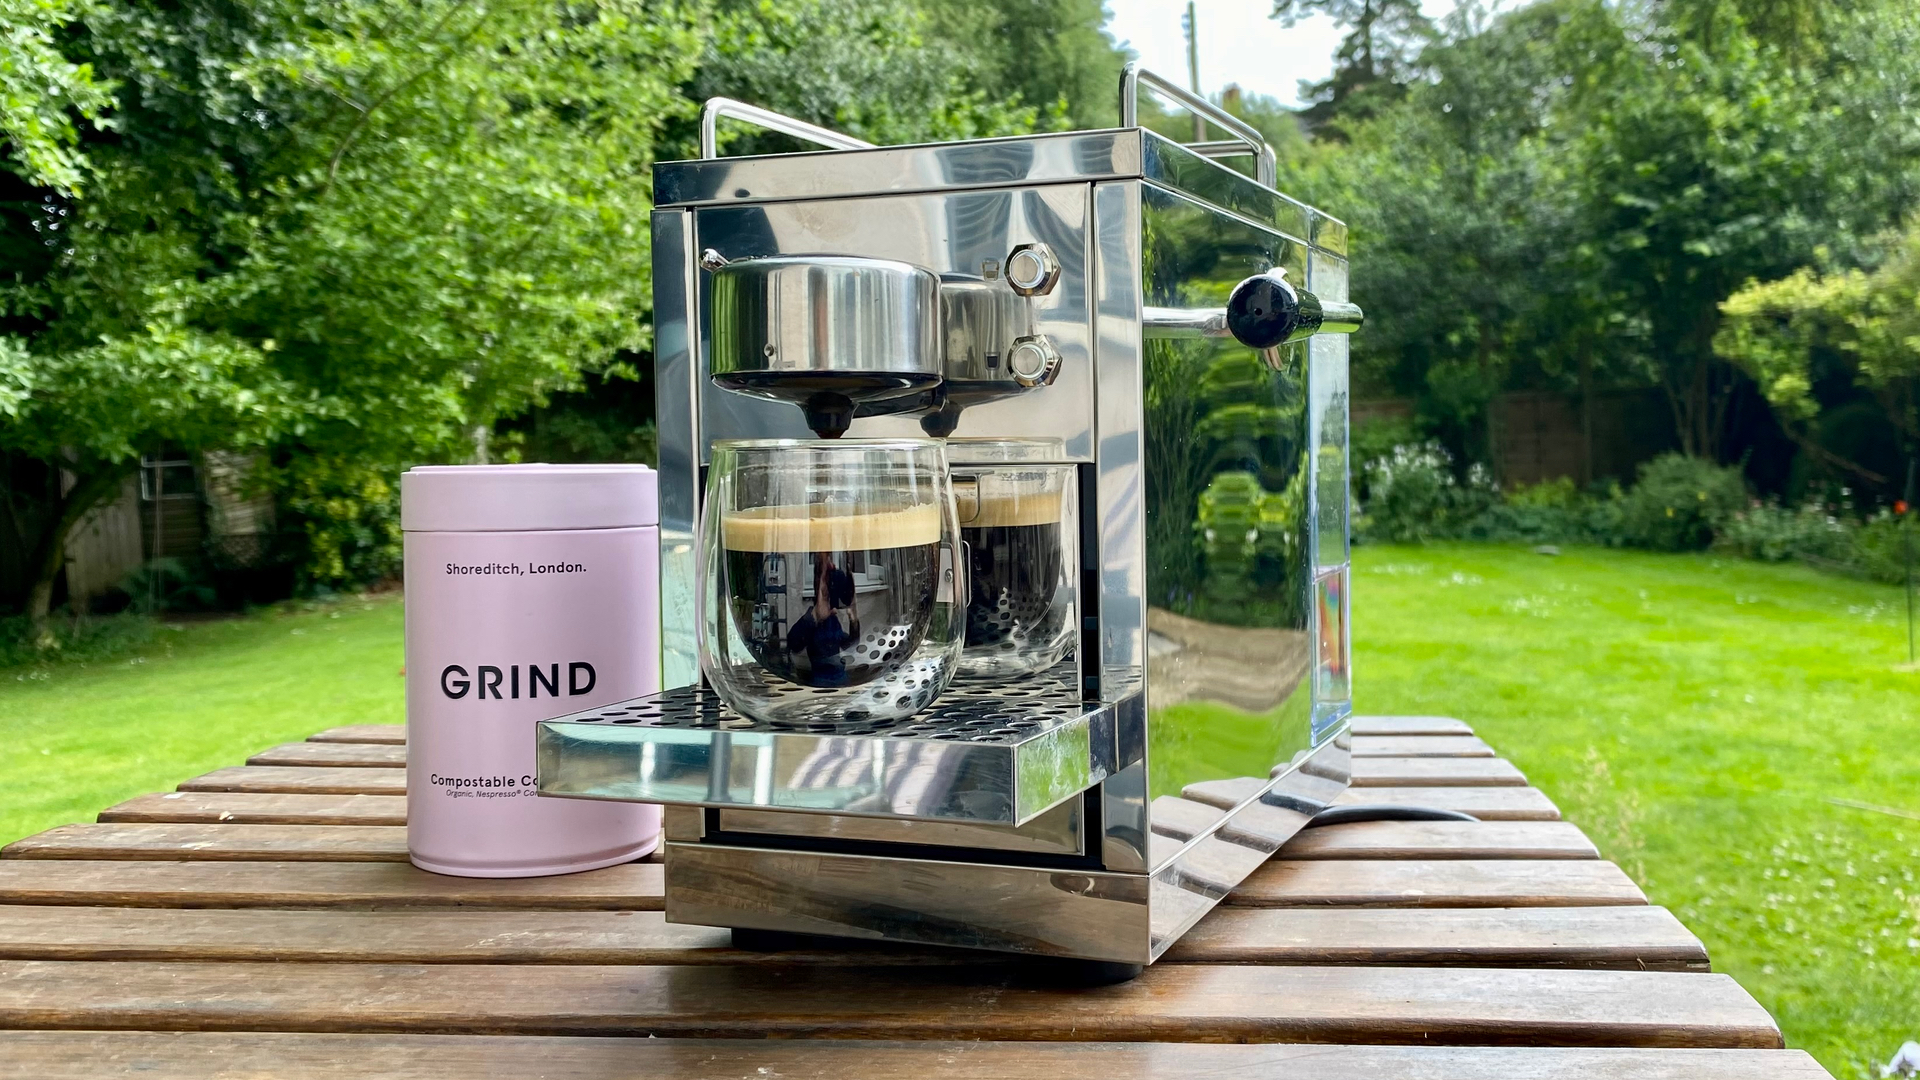 which Nespresso capsule works in my Nespresso machine? — Organic